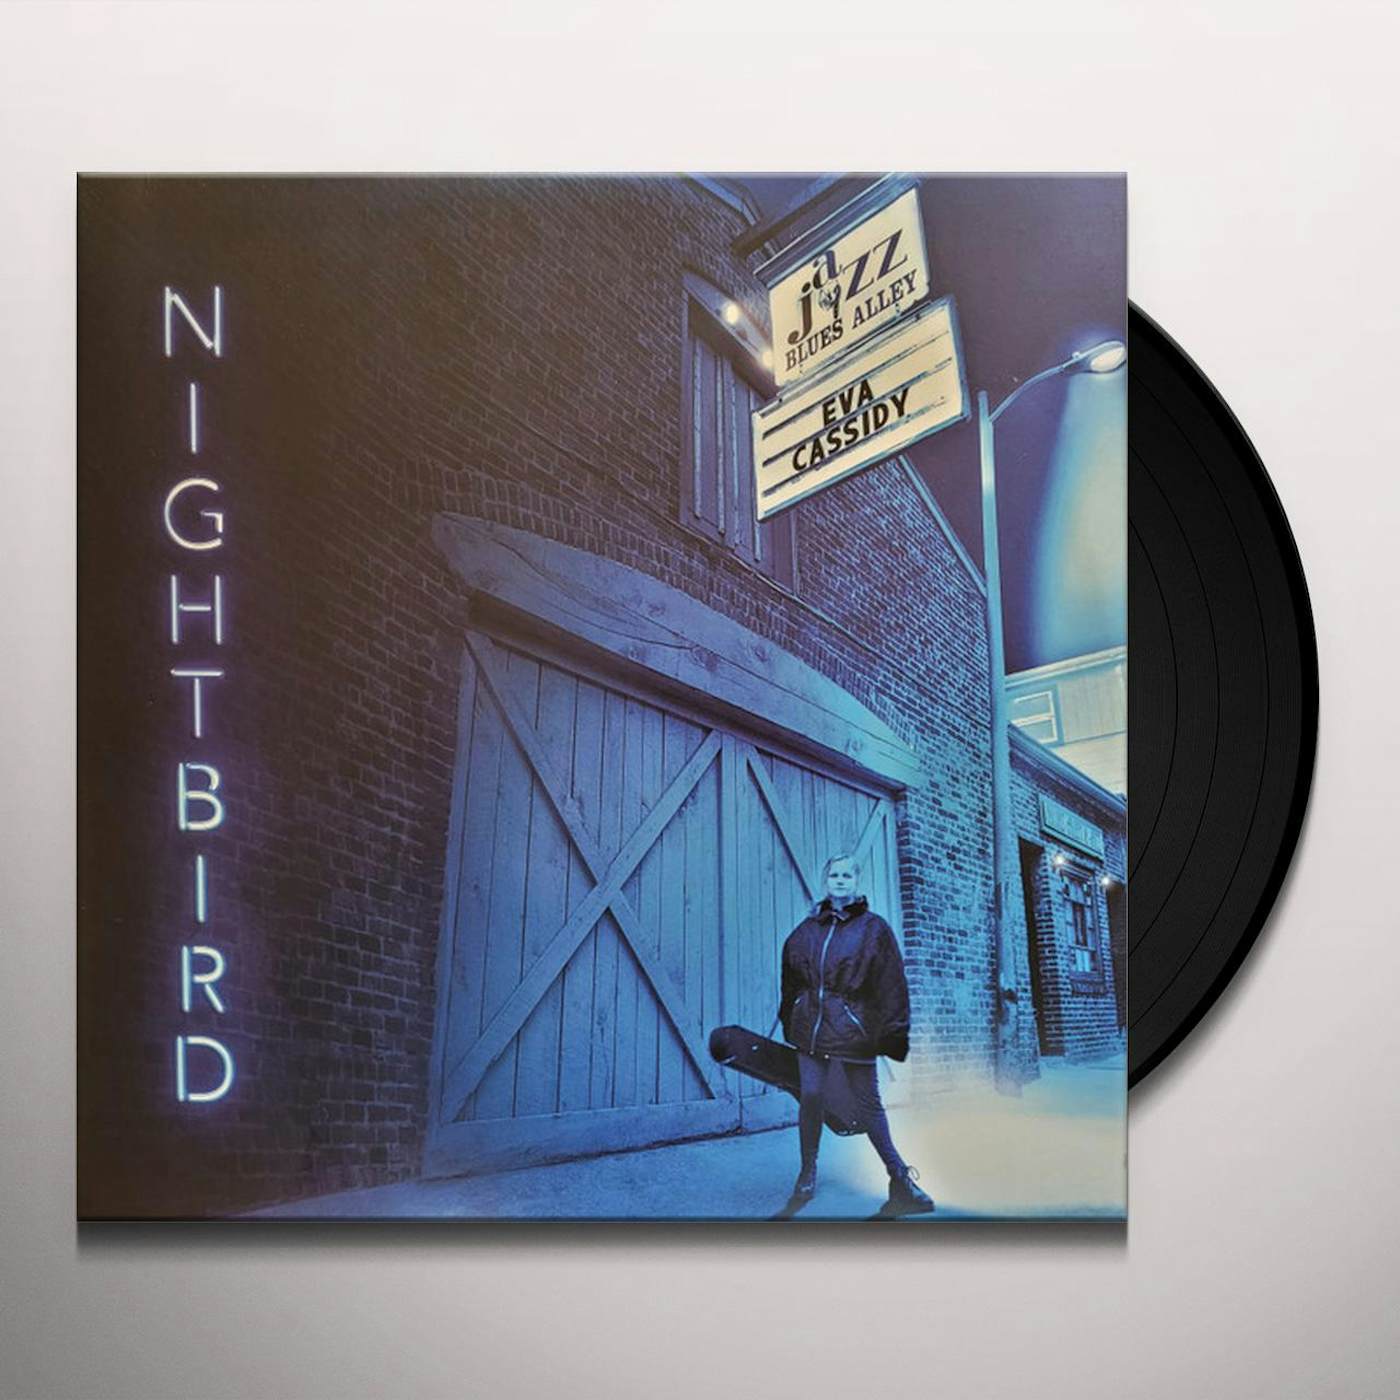 Eva Cassidy Nightbird Vinyl Record